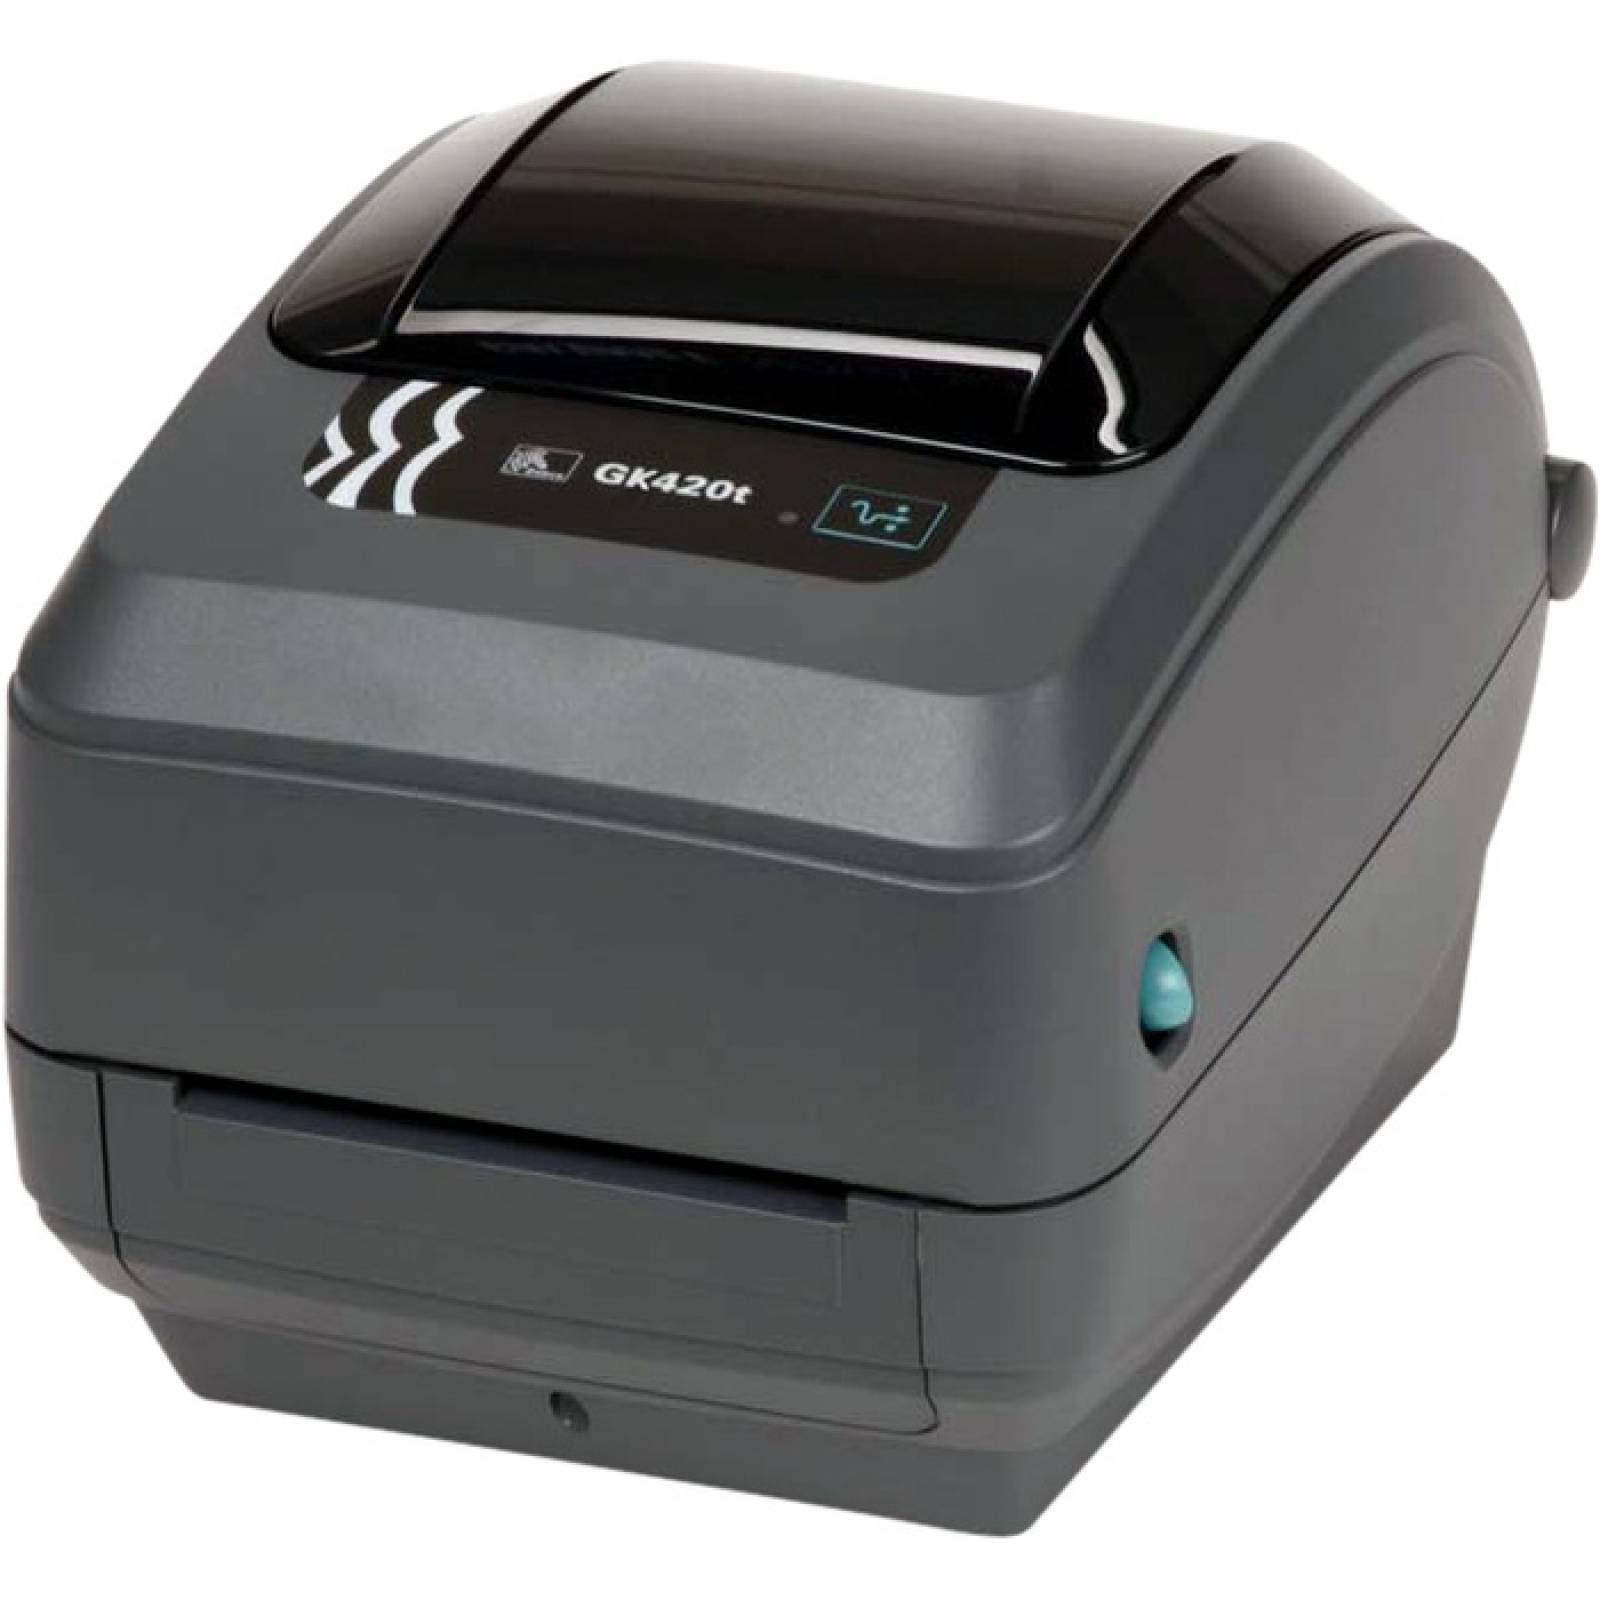 Impresora de transferencia trmica  trmica Zebra GK420t directa  Monocromo  Escritorio  Impresin de etiquetas